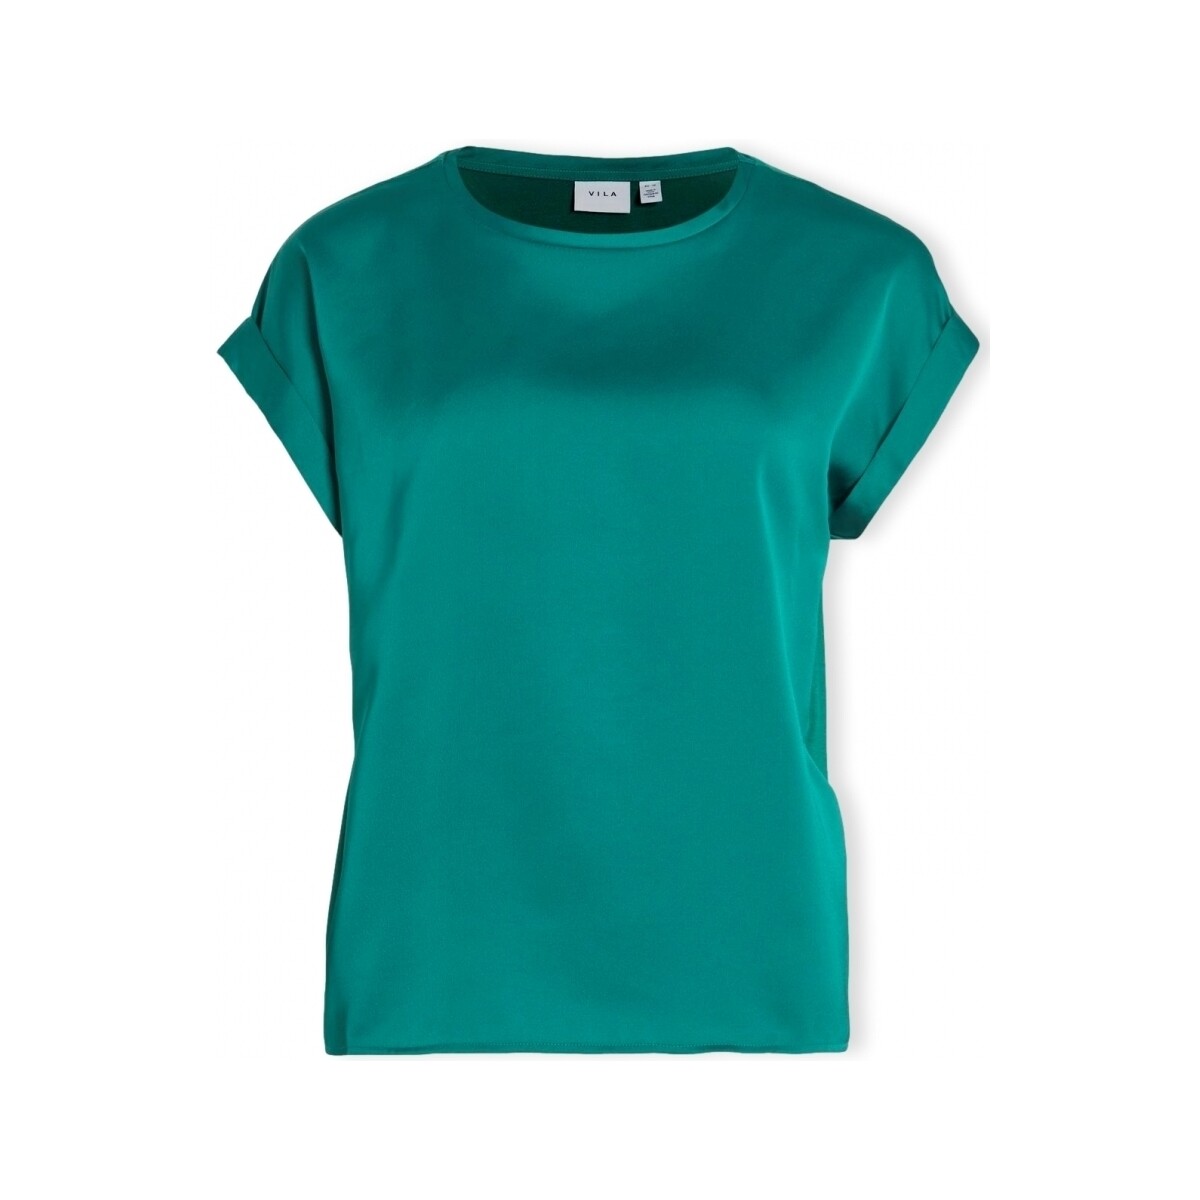 Textiel Dames Tops / Blousjes Vila Noos Top Ellette - Ultramarine Green Groen